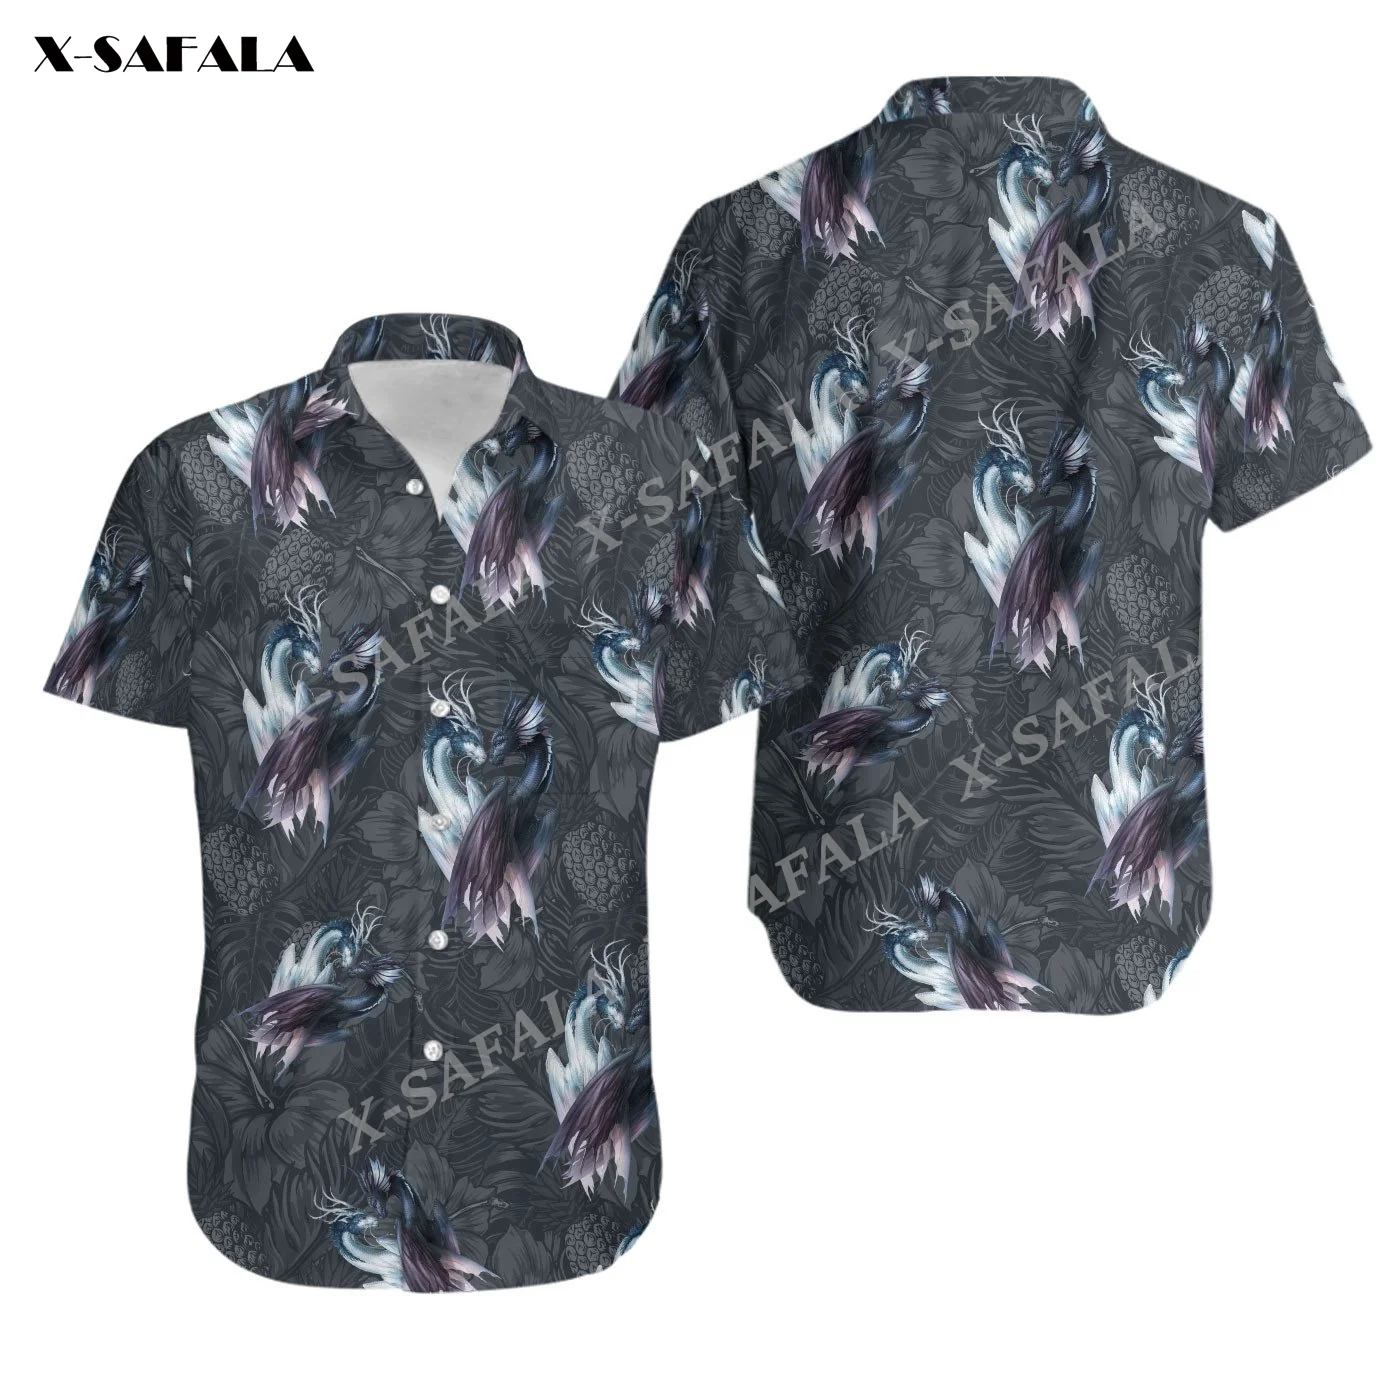 

Мужская пляжная гавайская рубашка с 3D принтом дракона и тропических листьев, модная повседневная футболка на пуговицах с коротким рукавом, лето